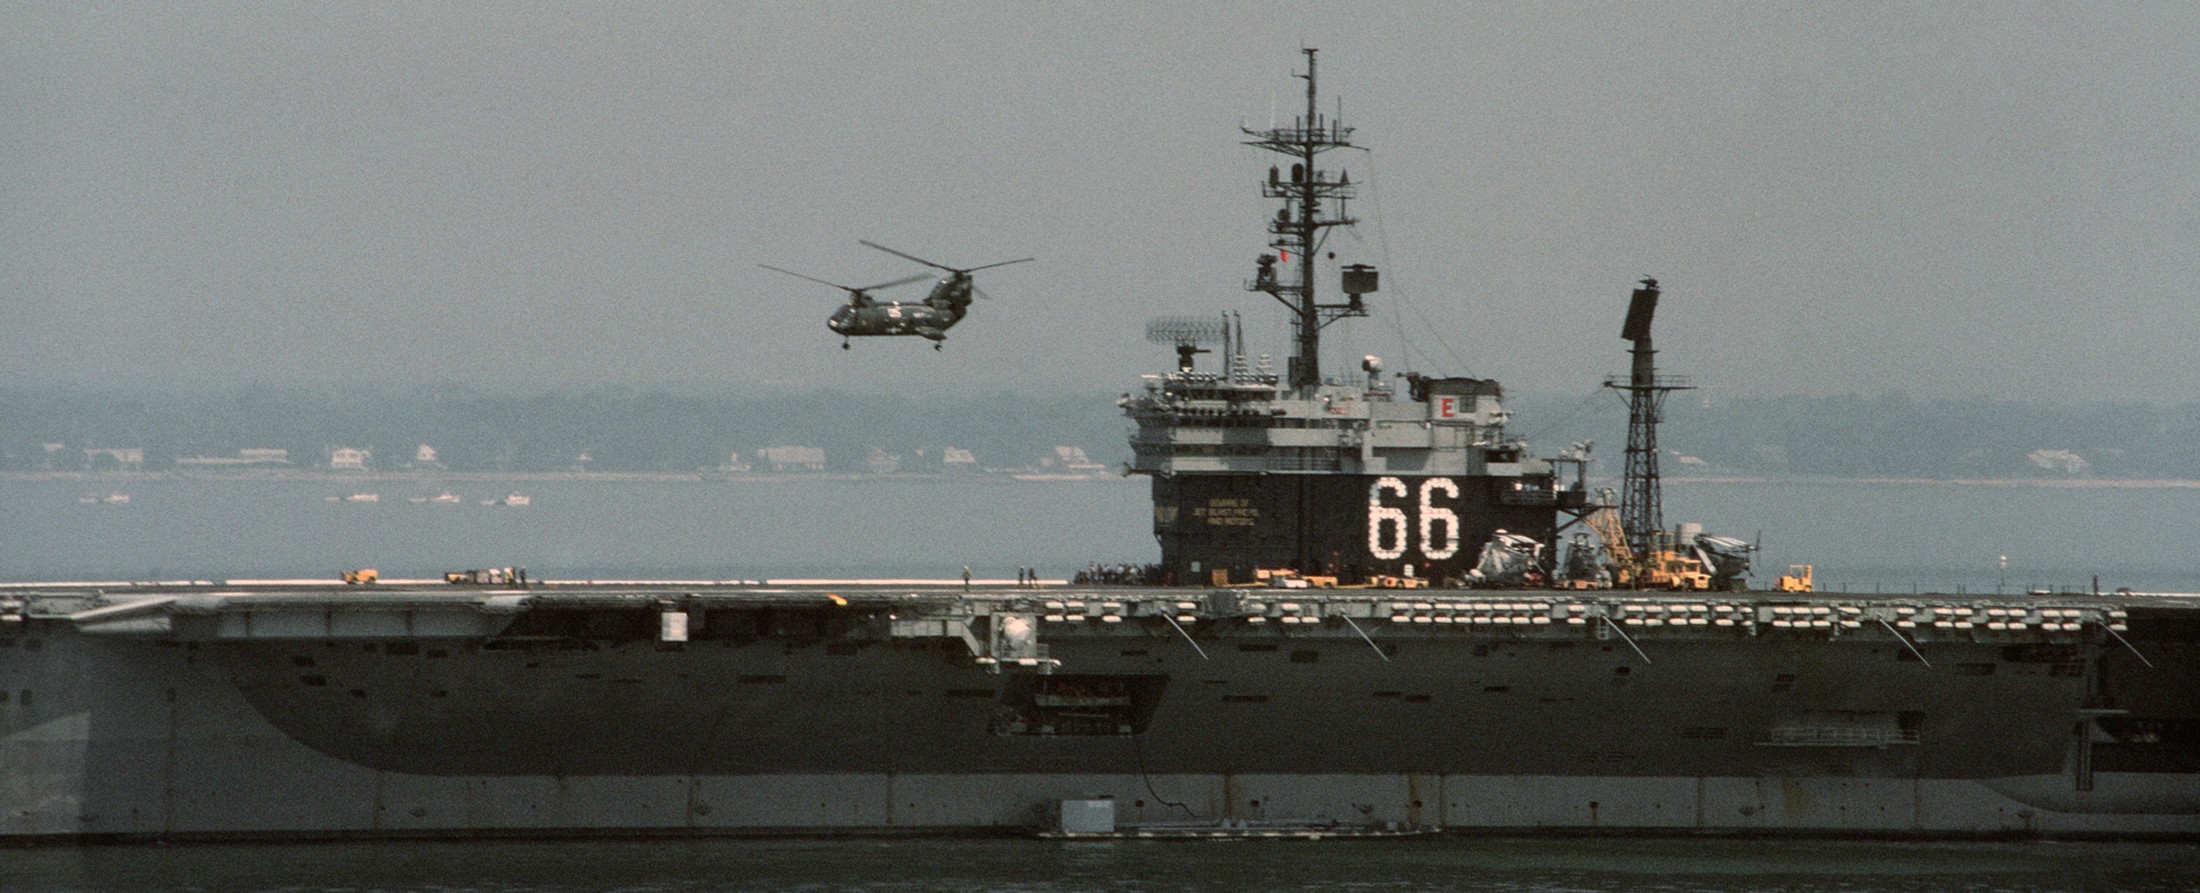 cv-66 uss america kitty hawk class aircraft carrier us navy 94